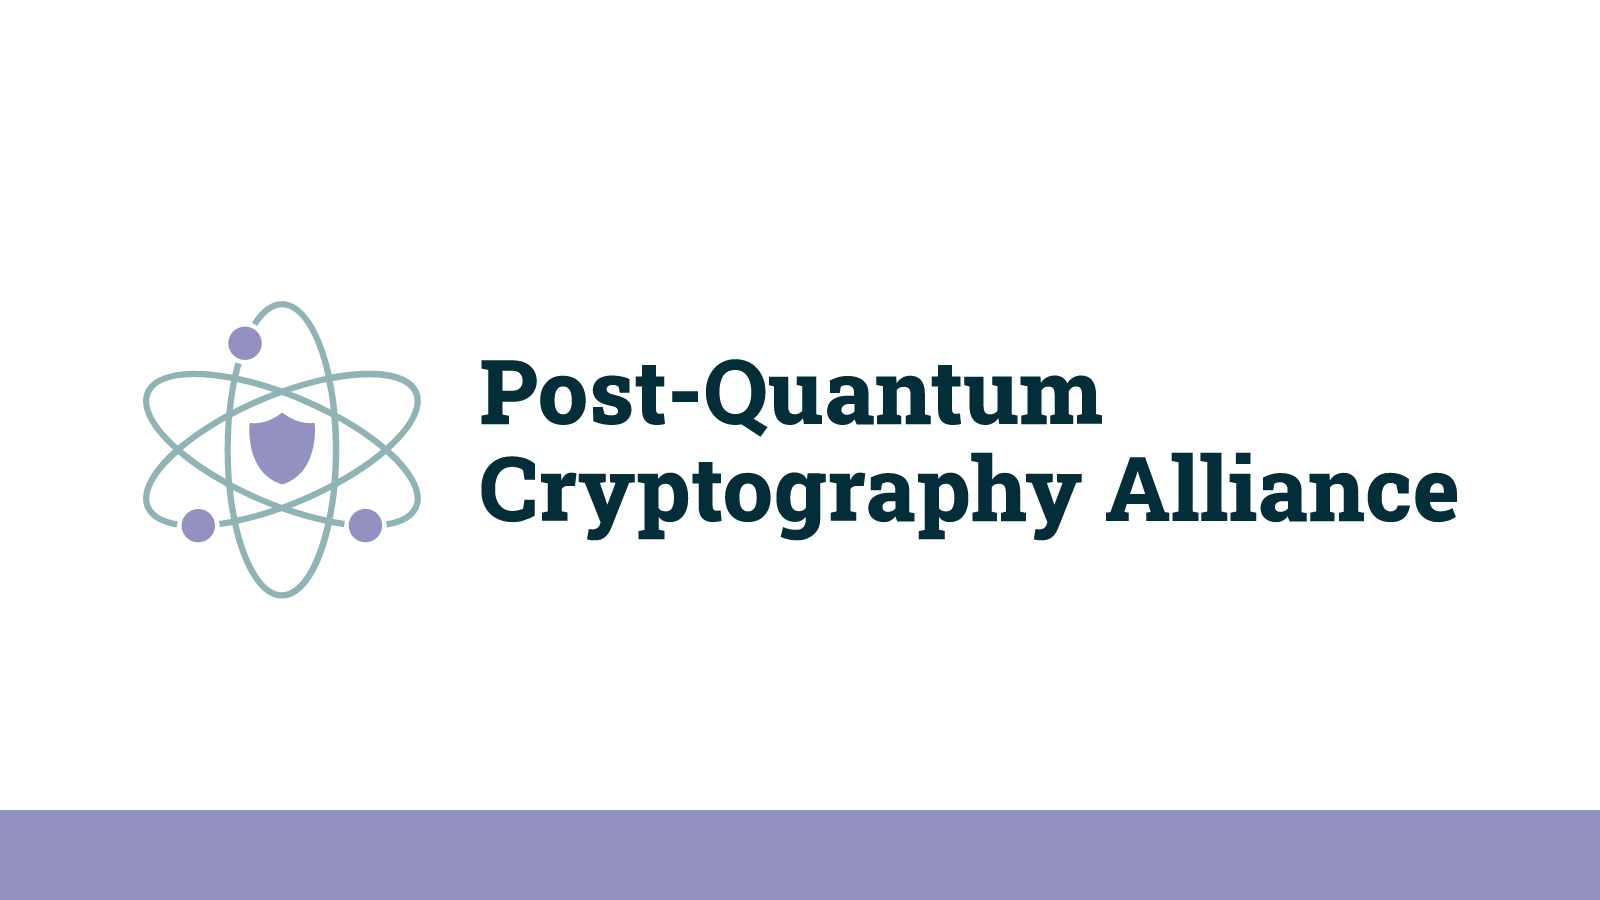 Post-Quantum Cryptography Alliance (PQCA) μια συμμαχία για την κρυπτογραφία στον μετα-κβαντικό κόσμο